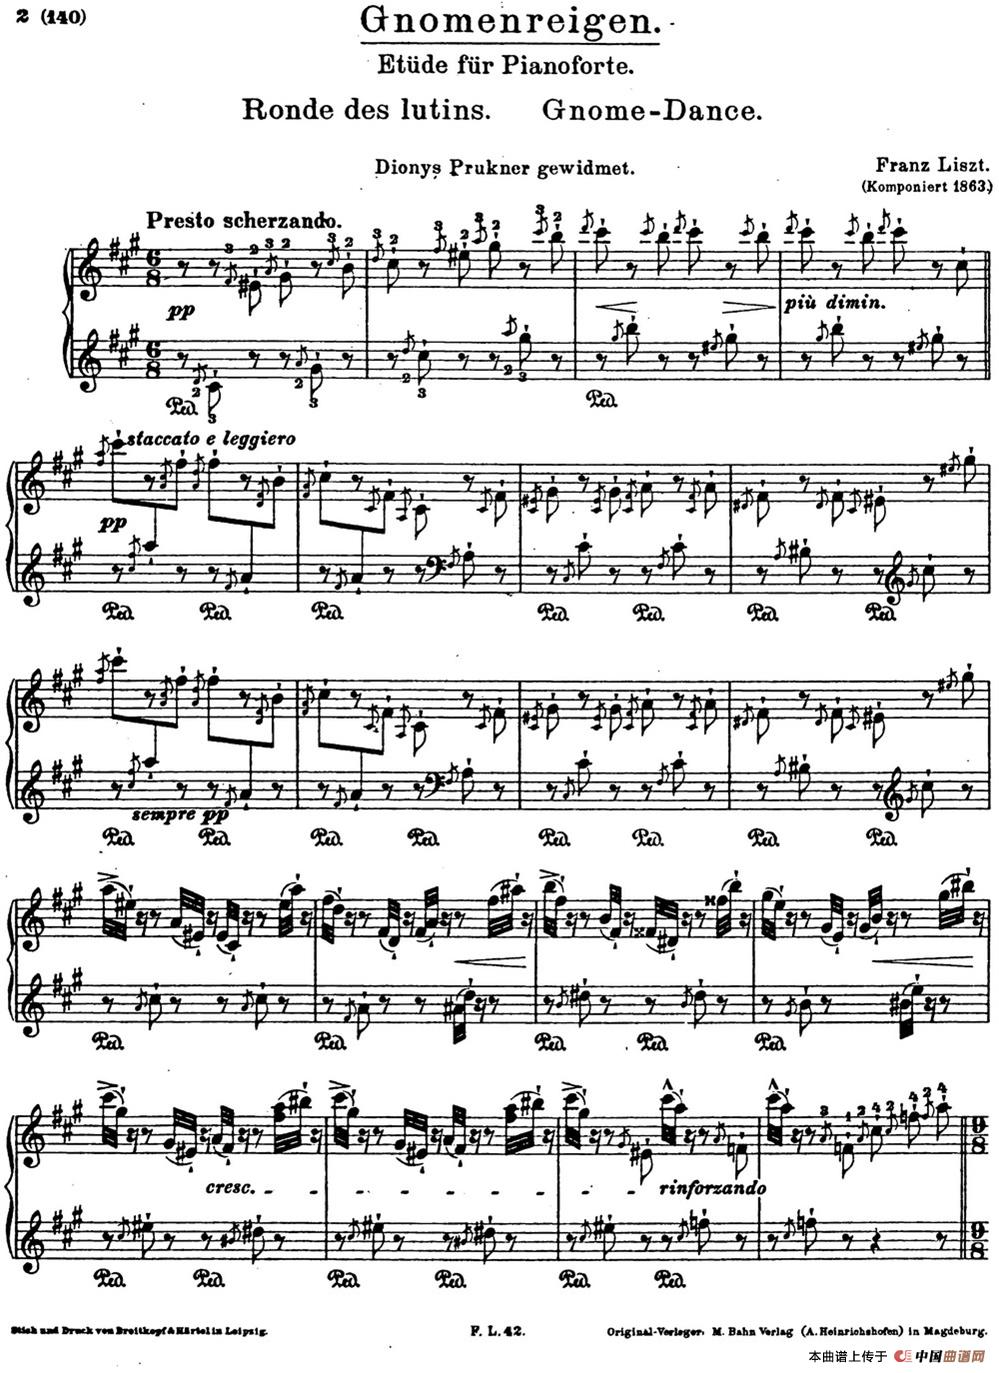 李斯特音乐会练习曲 S145（1 S145 森林的呼啸 Waldesrauschen）(1)_-Etudes de Concert s145 Liszt_页面_01.jpg